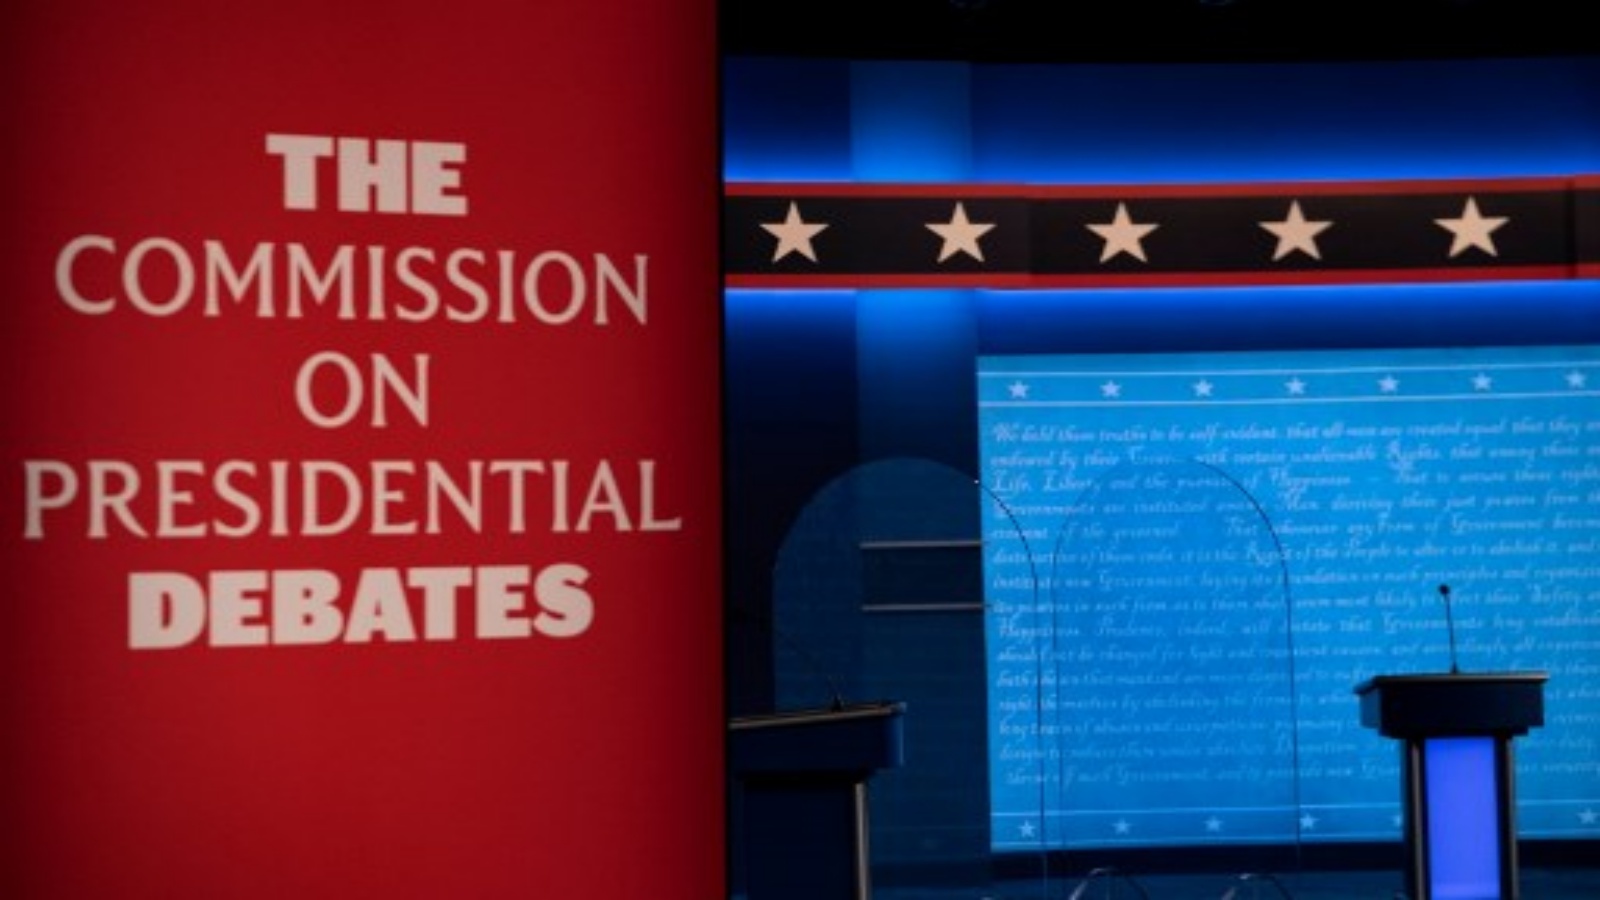 منصة المناقشة حيث يتم الاستعداد للمناقشة الرئاسية الأمريكية النهائية بين المرشحين الرئيس الأمريكي دونالد ترامب ونائب الرئيس الأمريكي السابق جو بايدن في جامعة بلمونت في 21 أكتوبر 2020 ، في ناشفيل ، تينيسي